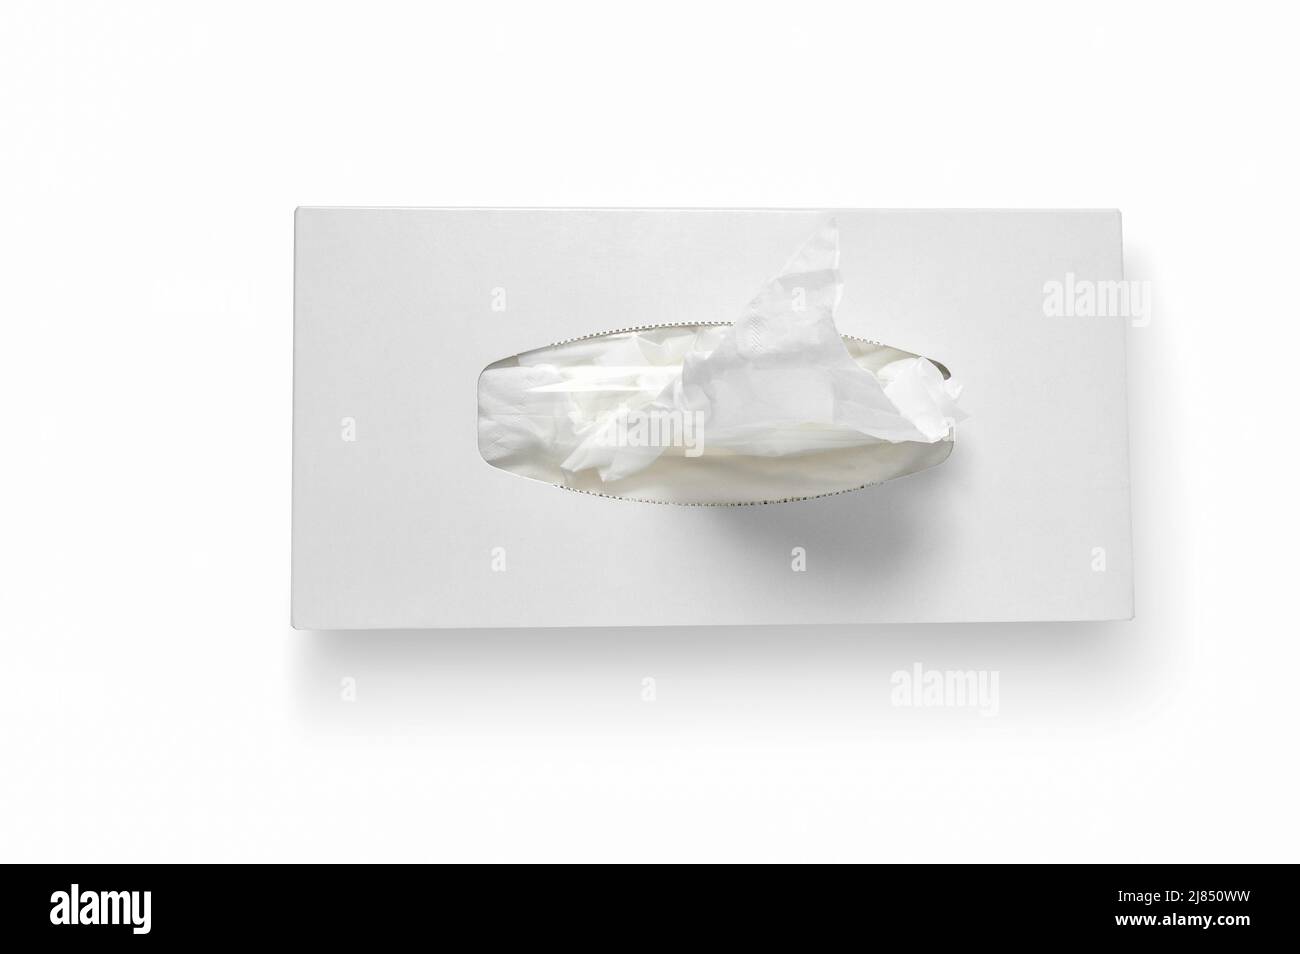 Vue de dessus des lingettes antibactériennes jetables humides dans une boîte en carton sur fond blanc. Banque D'Images